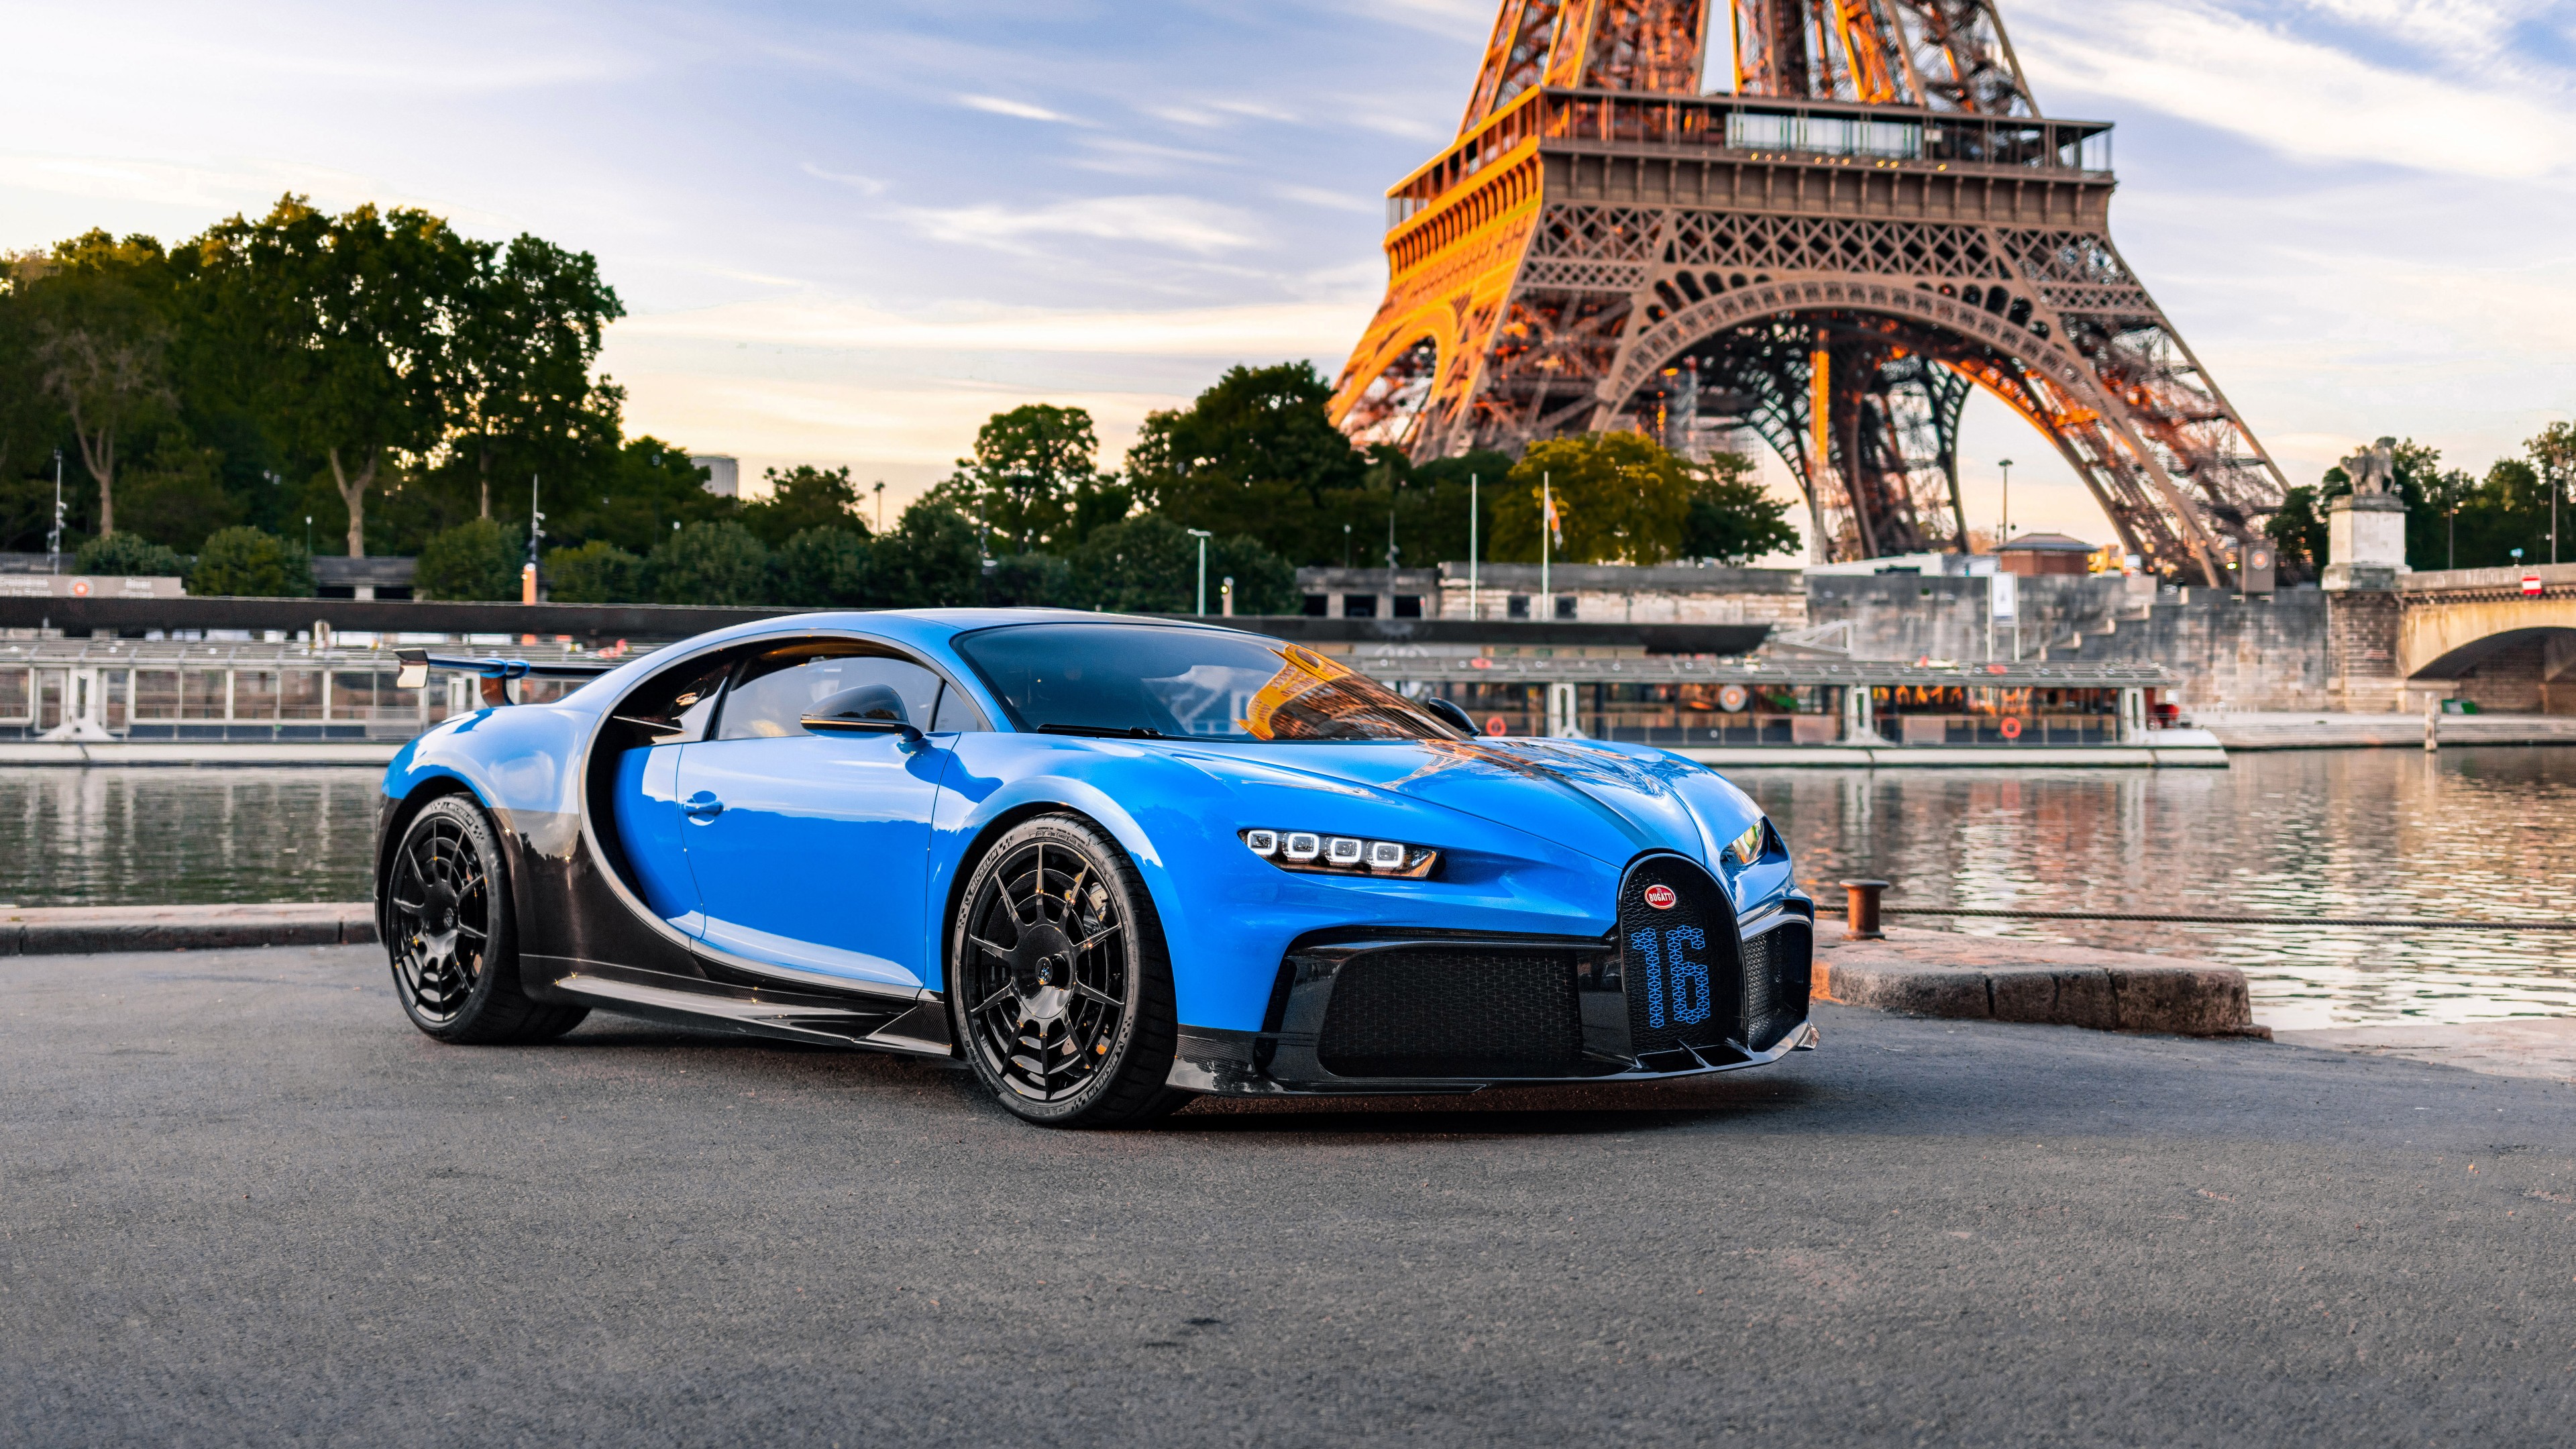 Bugatti Chiron Pur Sport 2020 4K 8K Wallpaper | HD Car ...